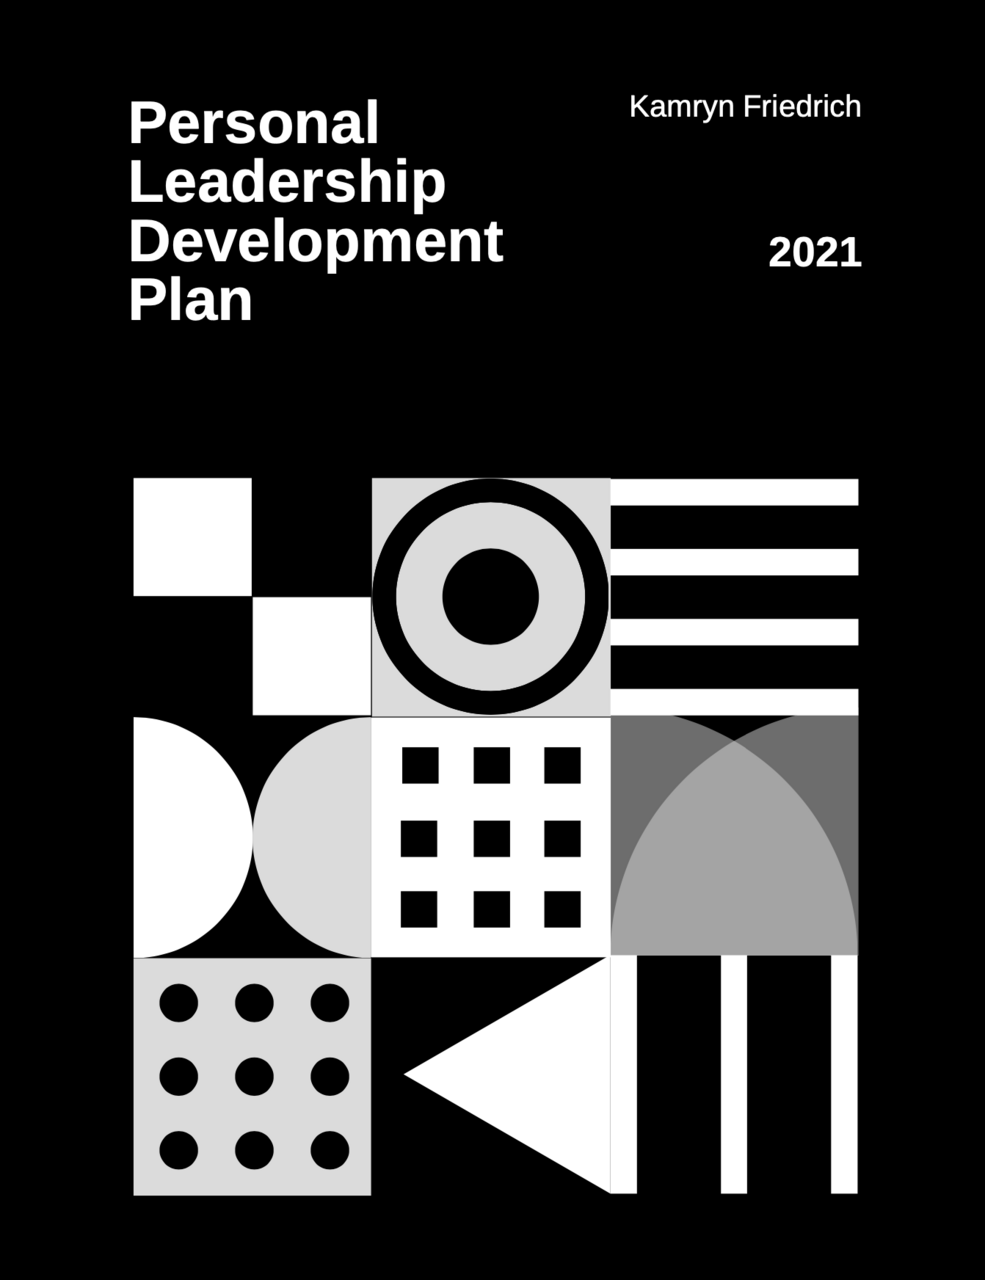 Personal Leadership Development Plan by Kamryn Friedrich